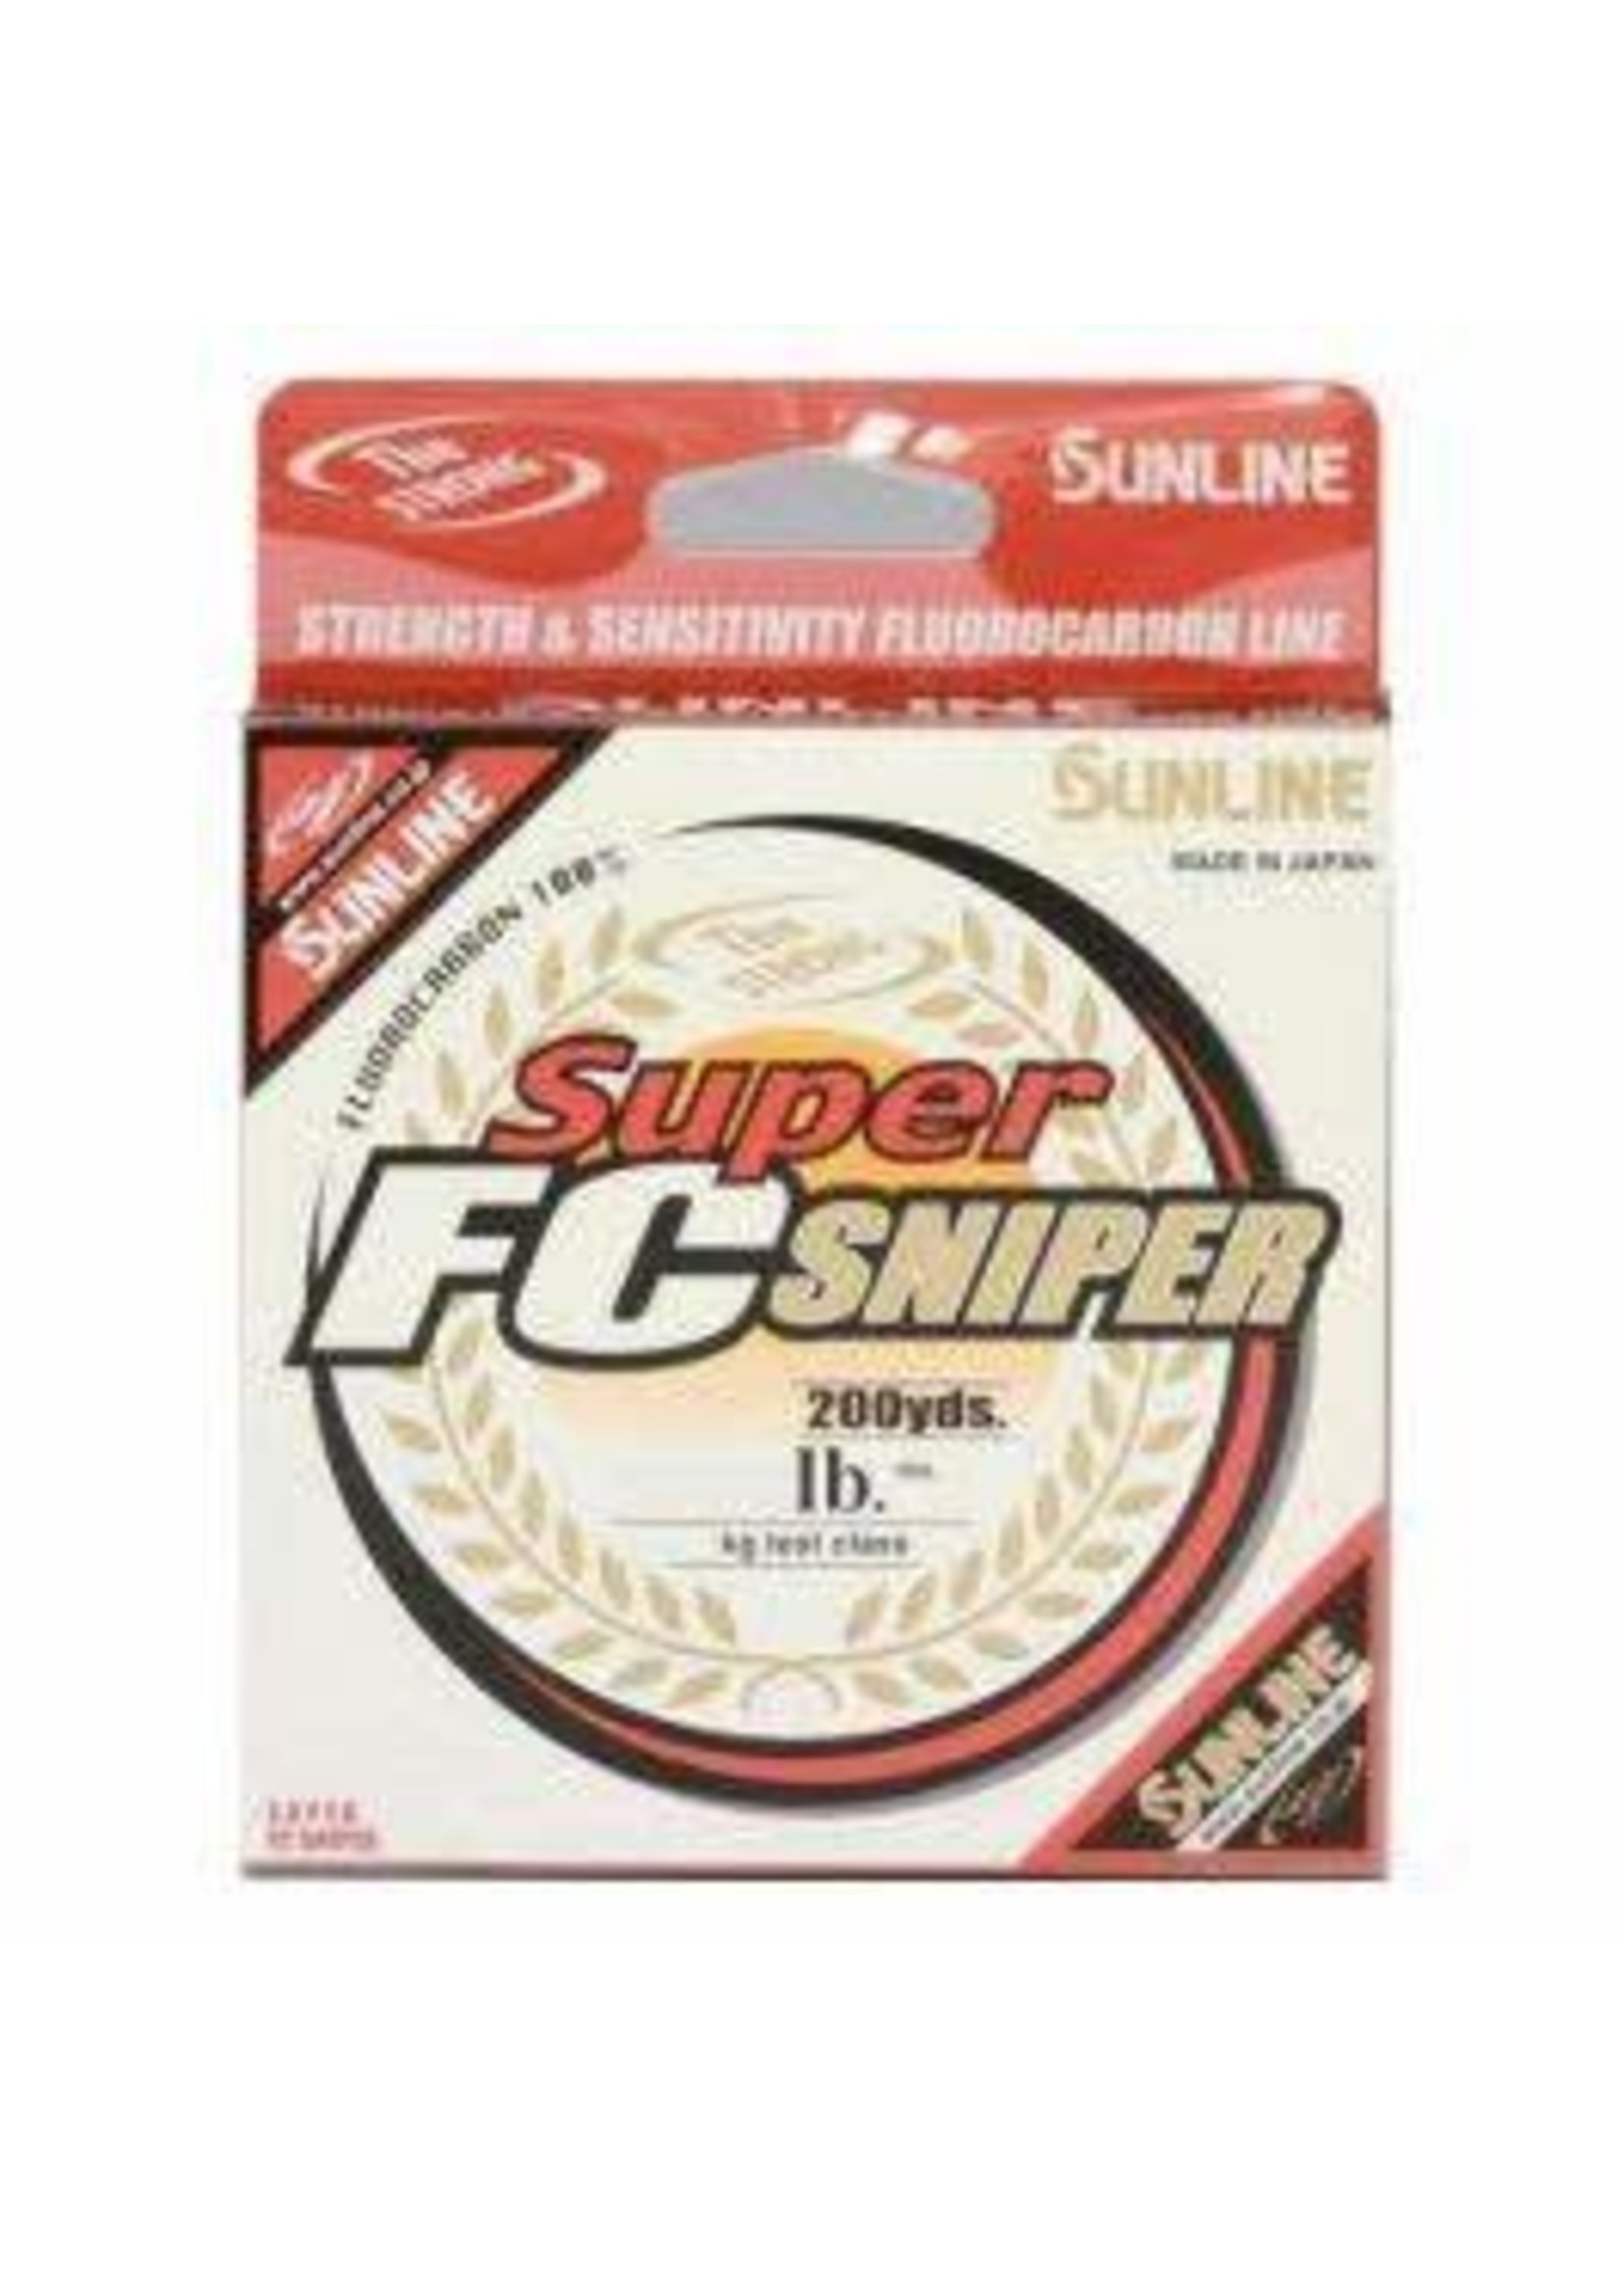 SUNLINE SUPER FC SNIPER - 8lb